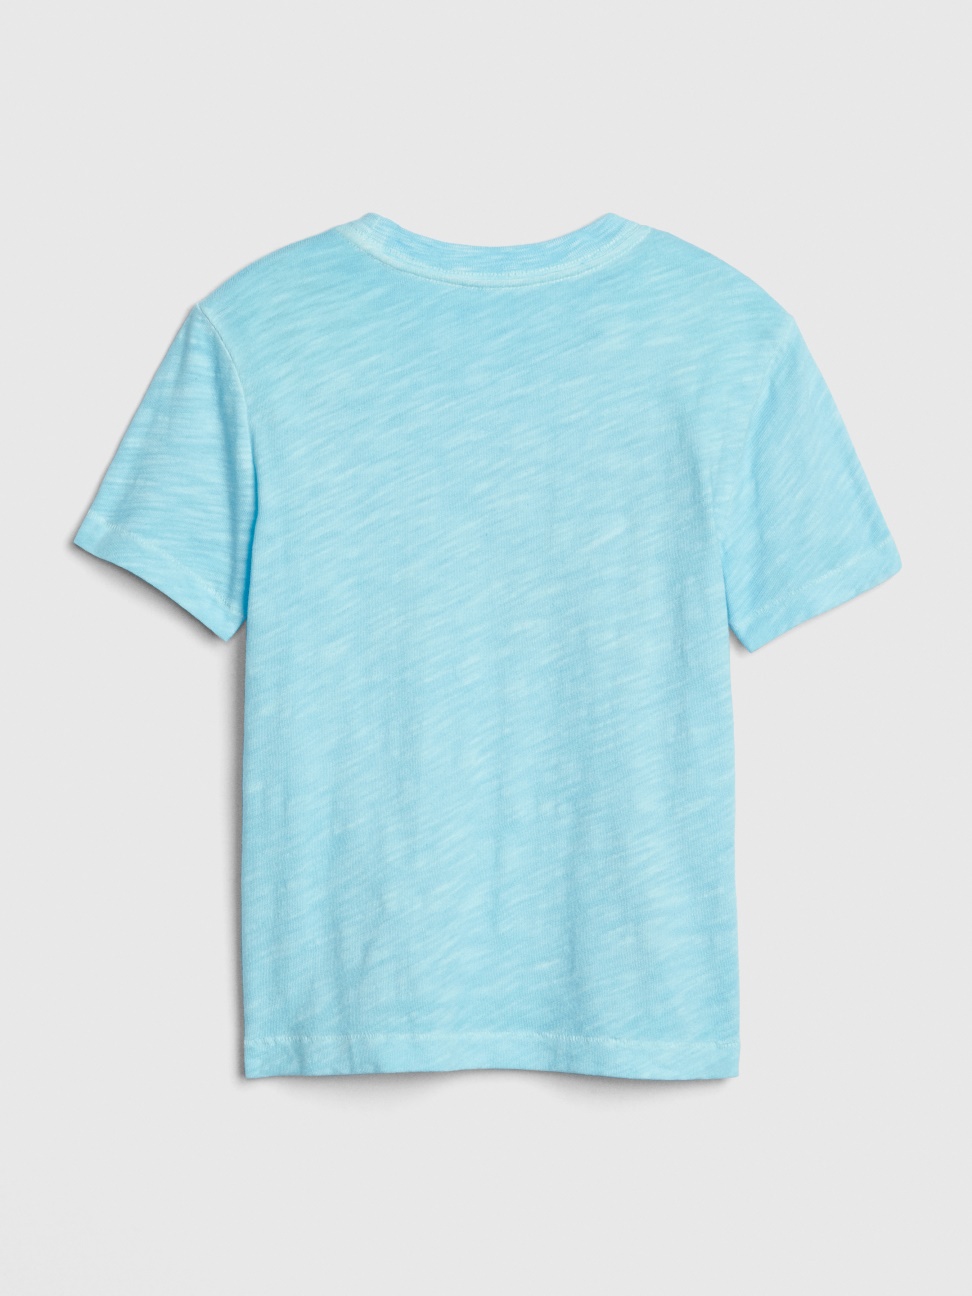 男幼童裝|Logo圓領短袖T恤-藍綠色